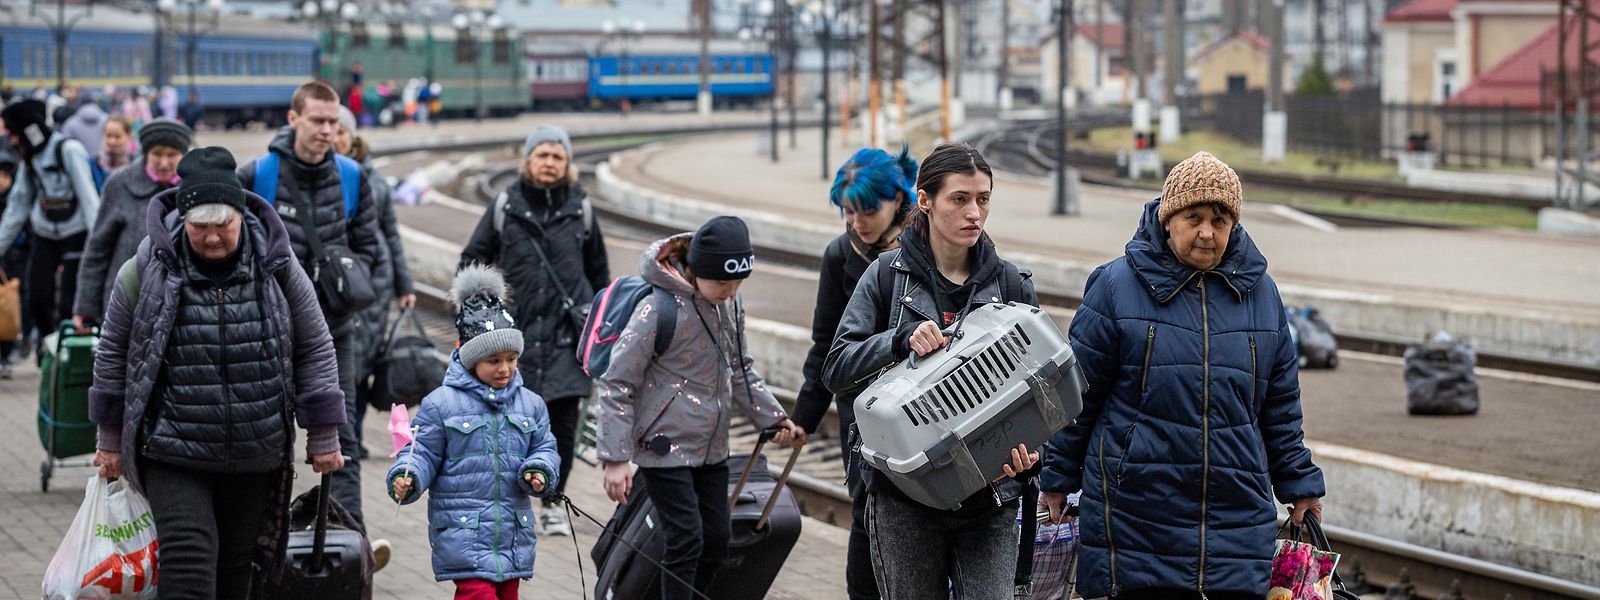 Des réfugiés - notamment de Kryvyi Rih, où ArcelorMittal possède une énorme usine - débarquent d'un train à la gare de Lviv en avril.